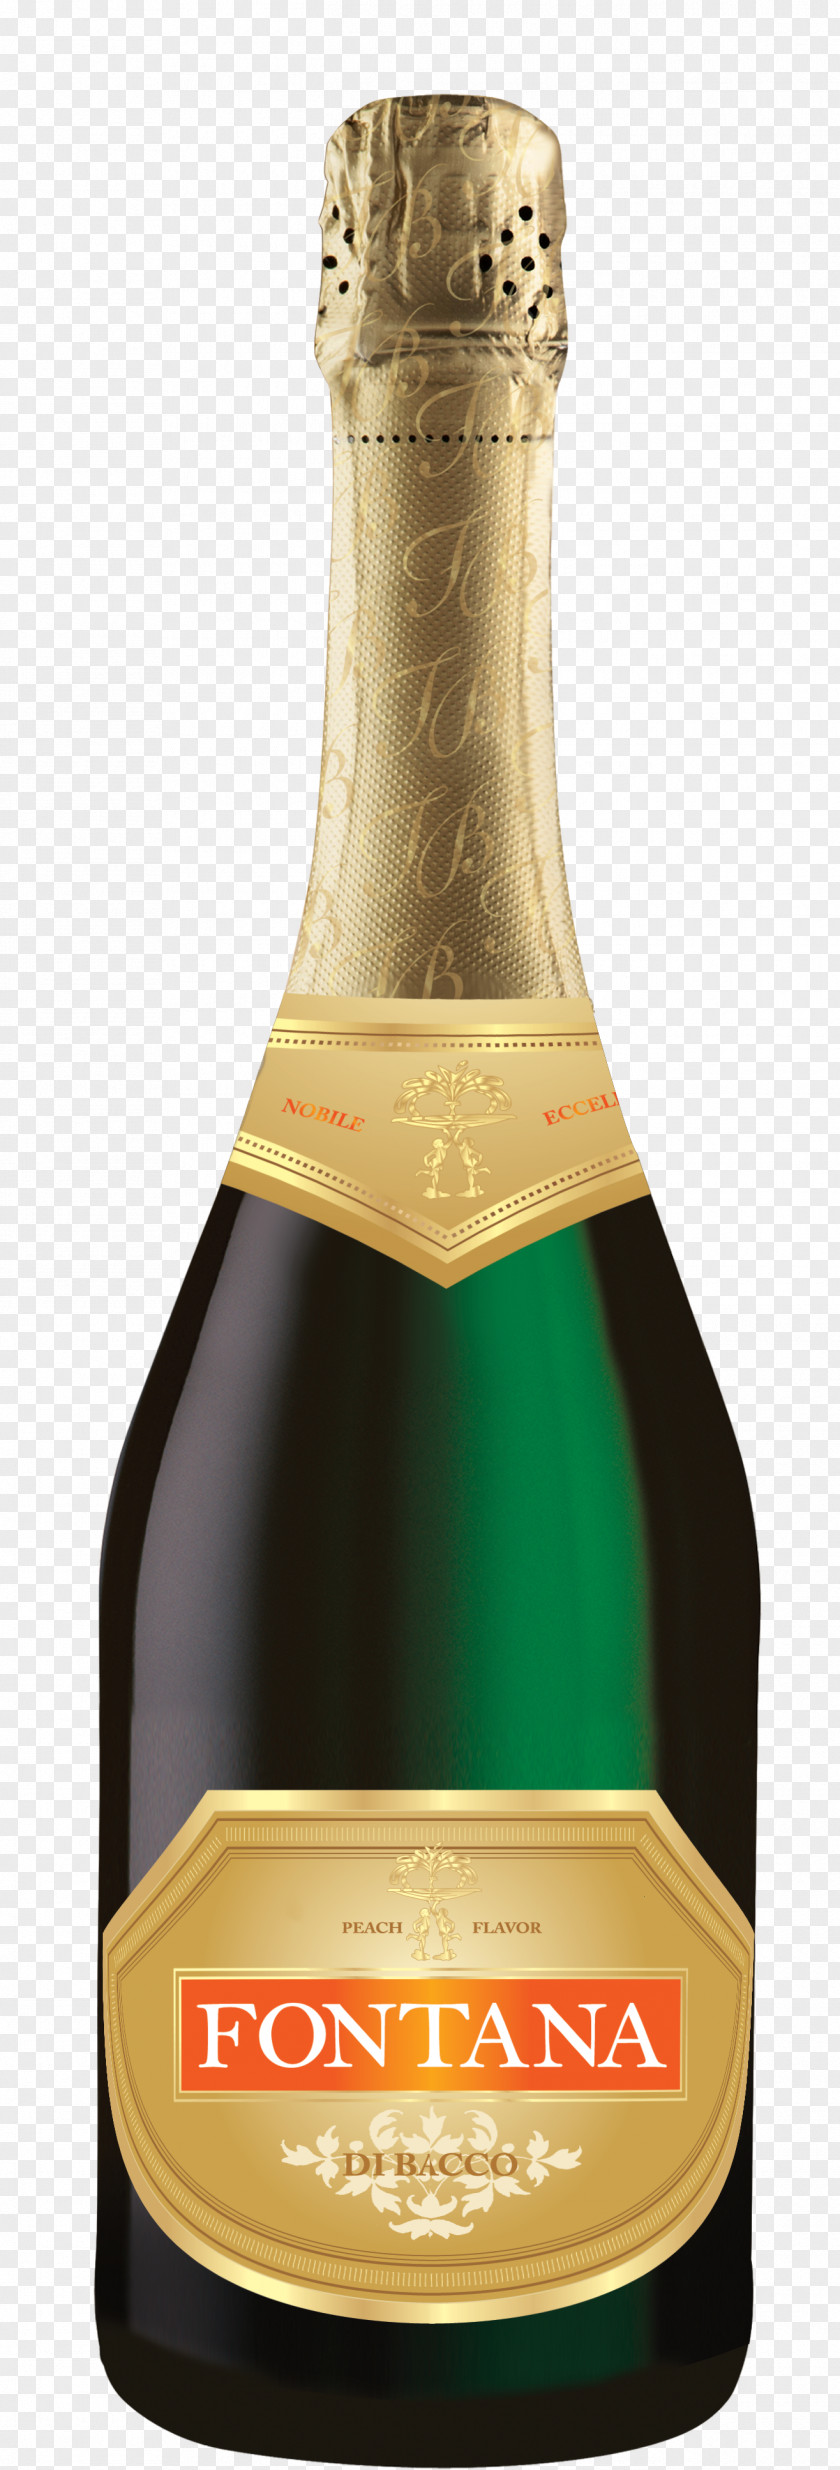 Champagne Liqueur Glass Bottle PNG